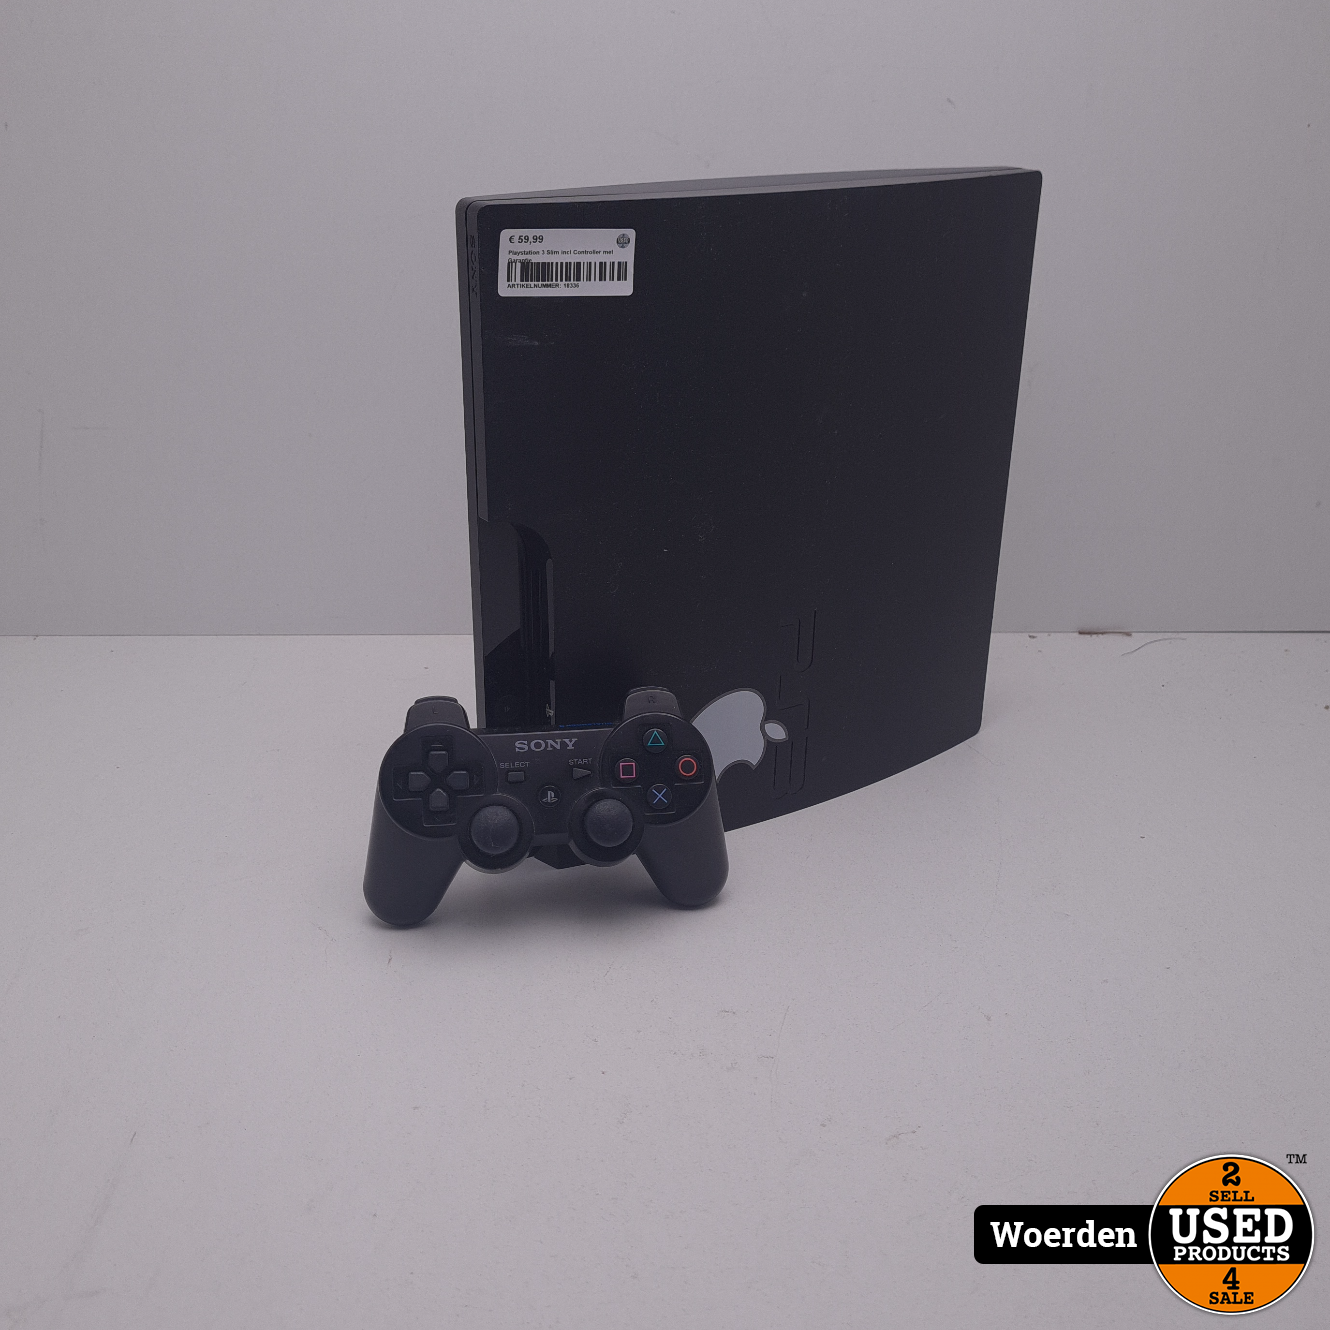 fictie Verslinden Meesterschap Playstation 3 Slim incl Controller met Garantie - Used Products Woerden